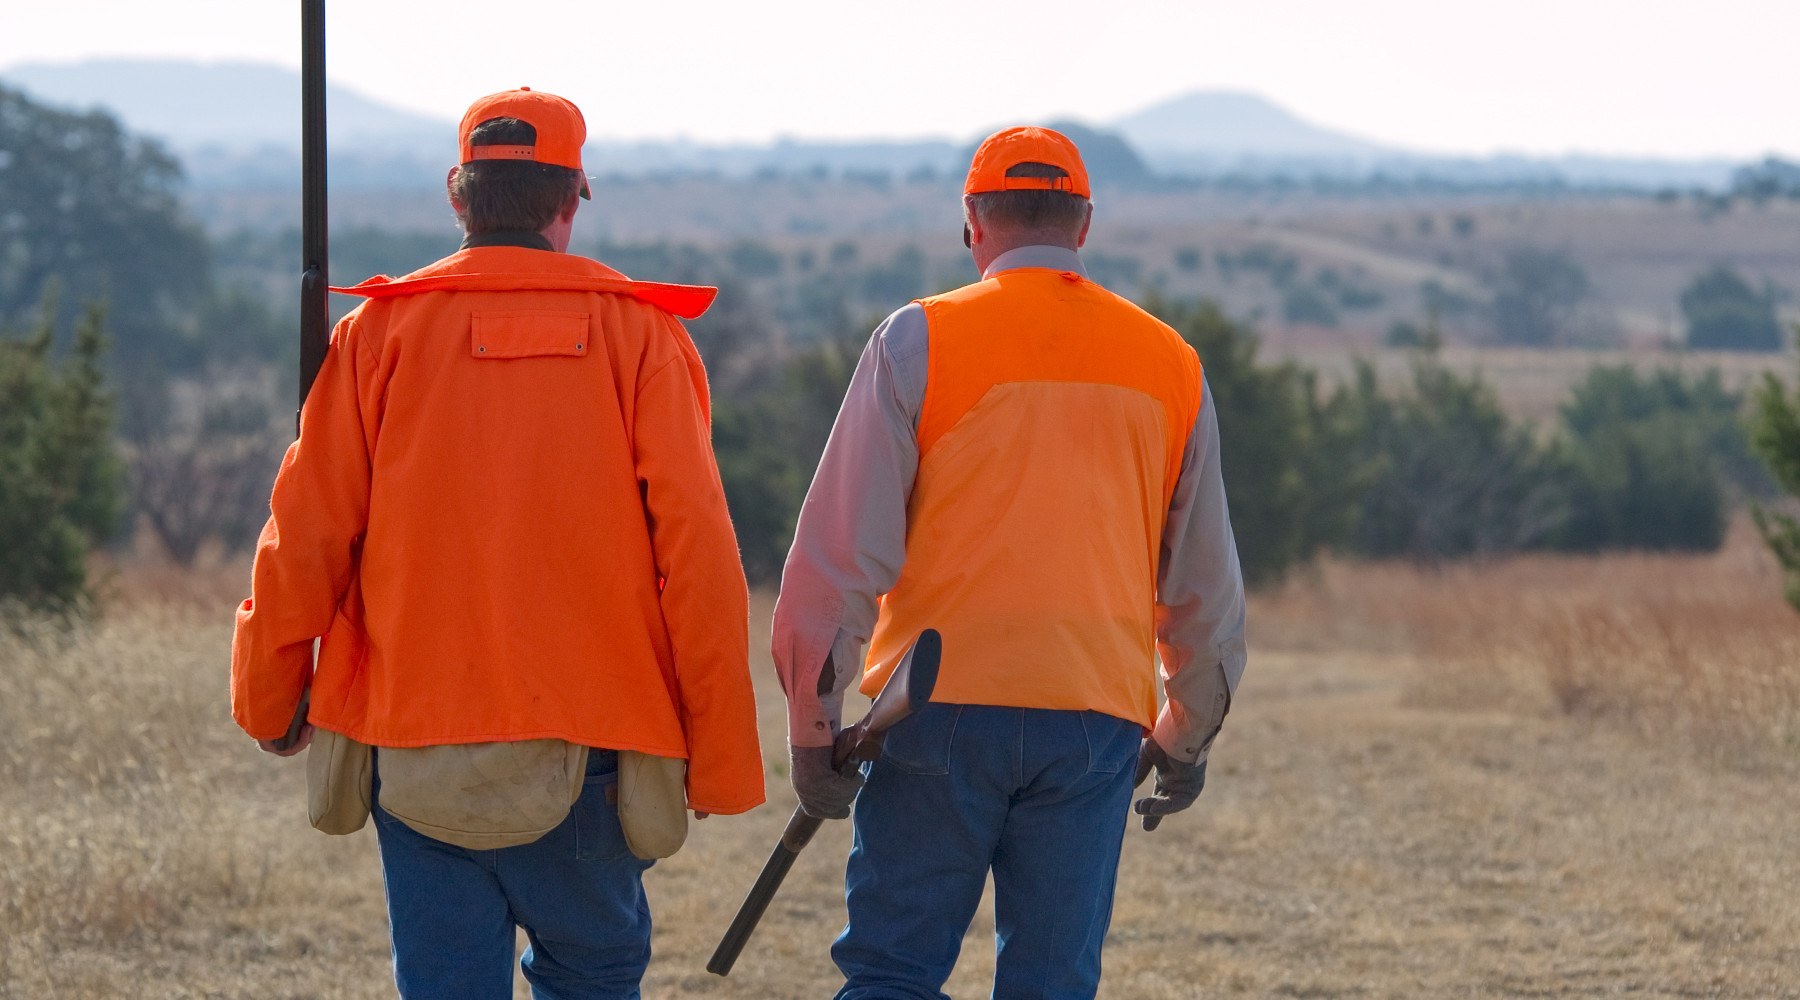 Associazione unica dei cacciatori: due cacciatori di spalle indossano gilet arancio alta visibilità